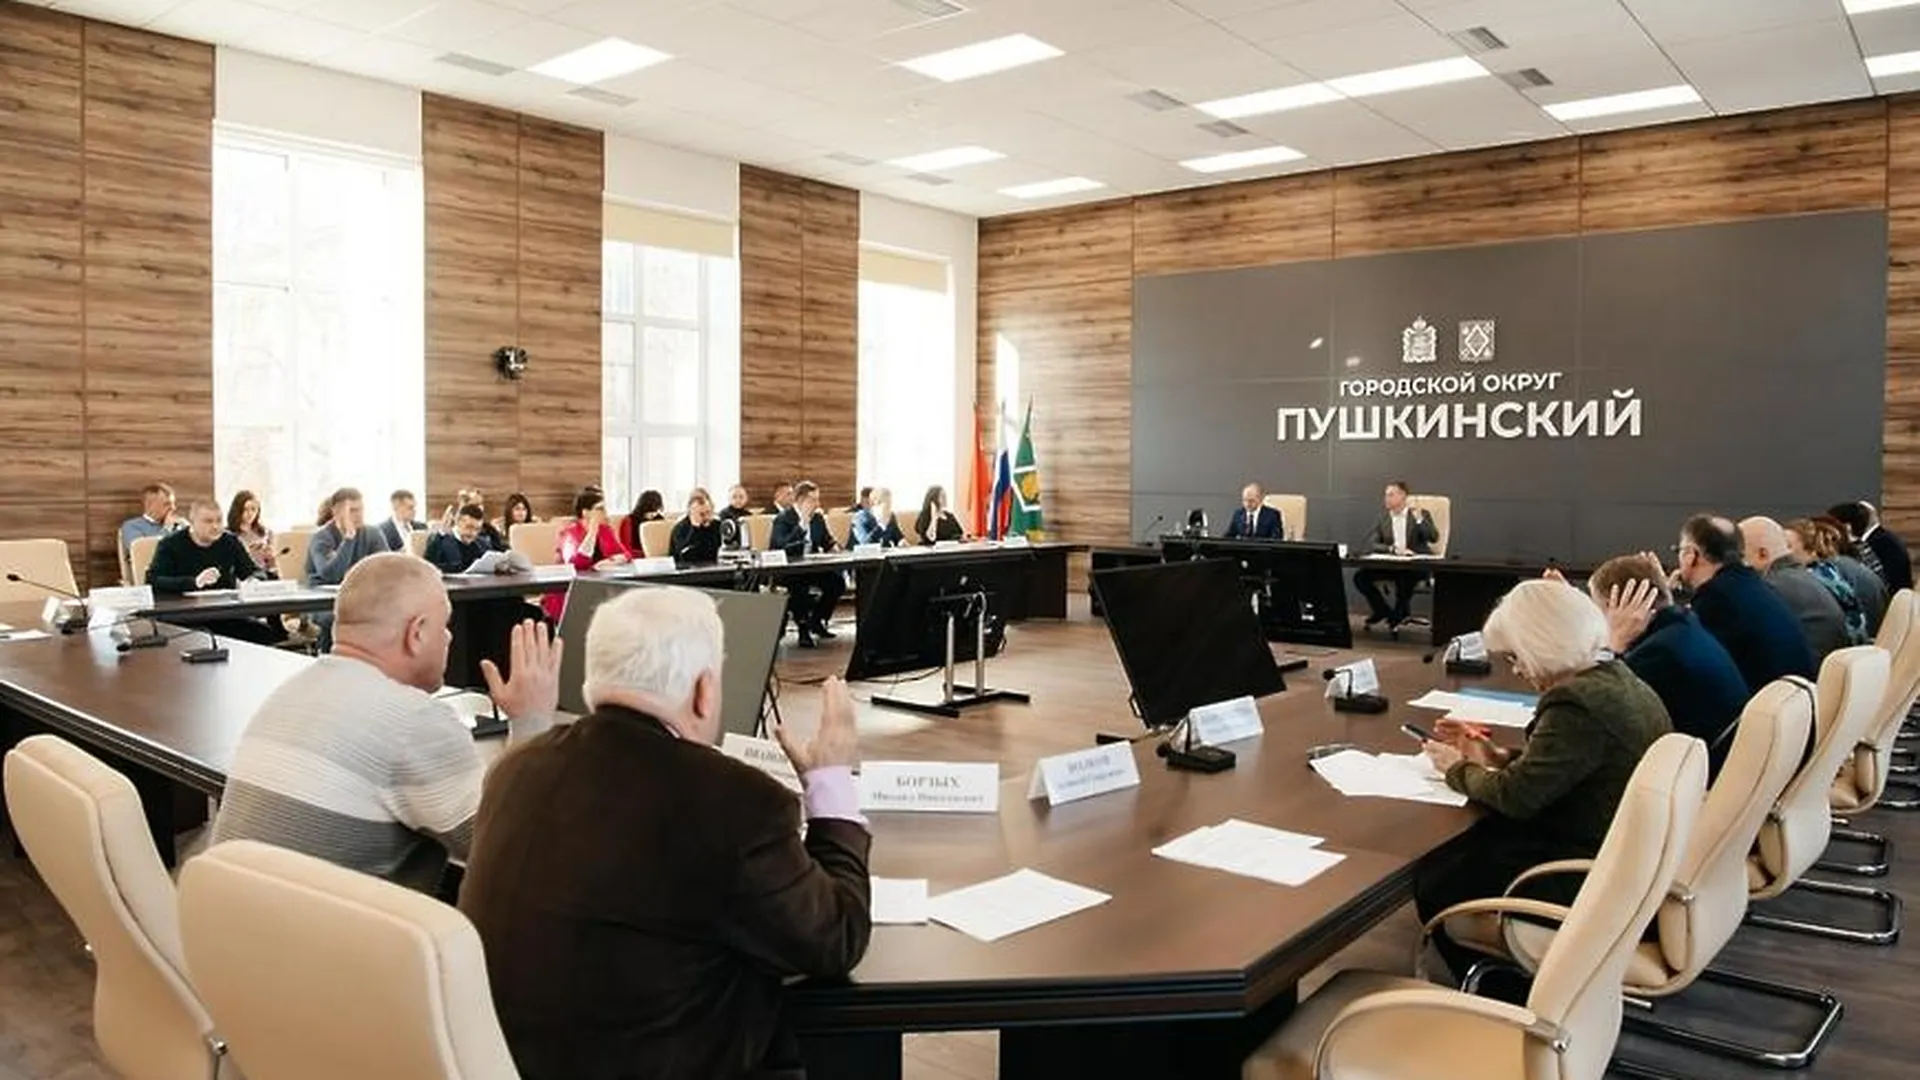 В Городском округе Пушкинский состоялось внеочередное заседание Совета депутатов